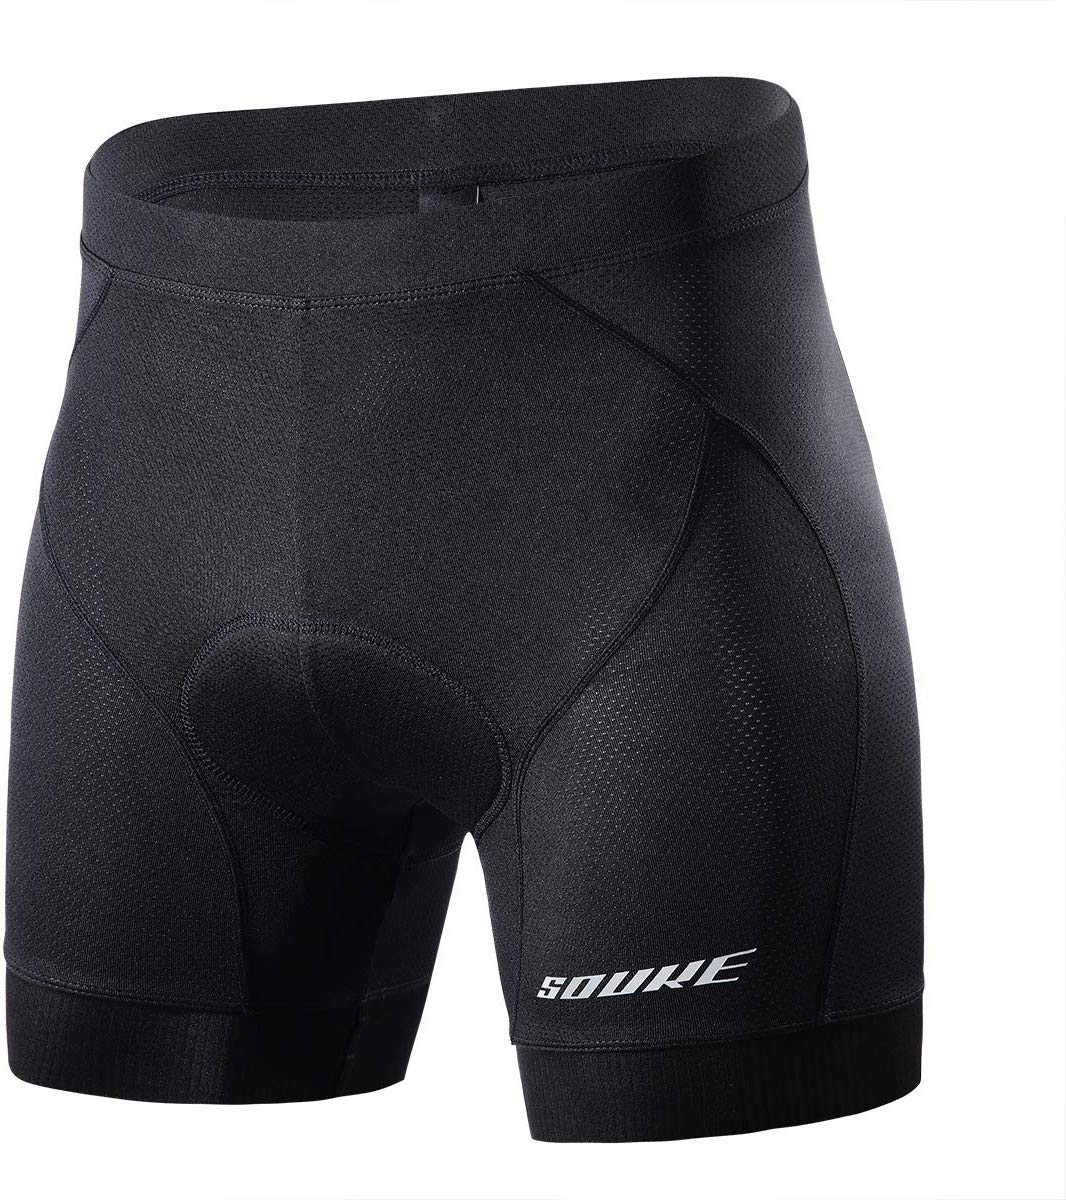 Souke Sports Men's Cycling Underwear